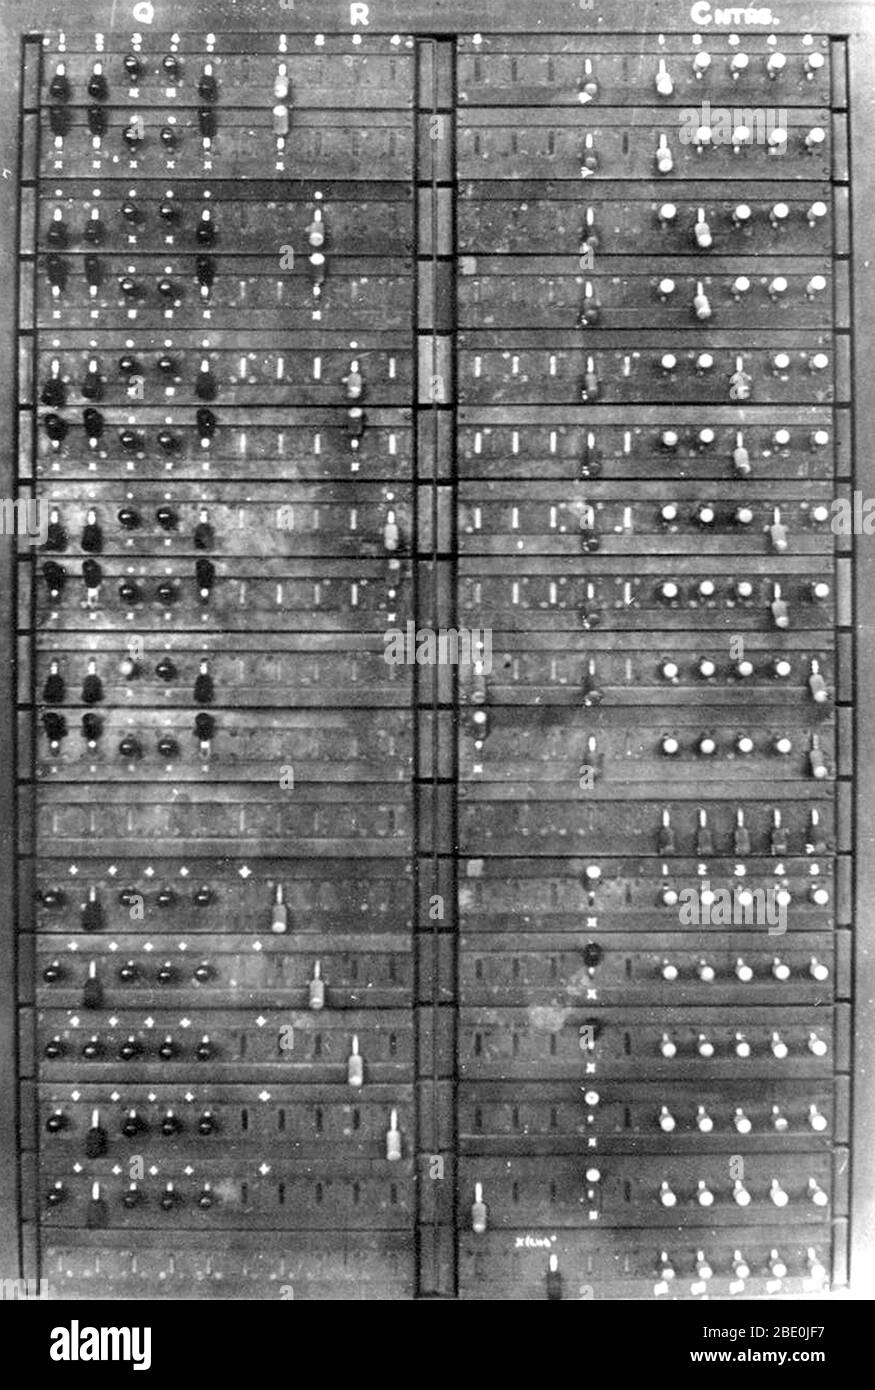 Photographie en temps de guerre d'une partie d'un ordinateur Colossus montrant le panneau Q, 1945. Colossus était un ensemble d'ordinateurs développés par les codébriseurs britanniques dans les années 1943-1945 pour aider à la cryptanalyse du chiffrement de Lorenz utilisé par l'armée allemande. Colossus a utilisé des valves thermioniques (tubes à vide) pour effectuer des opérations booléennes et de comptage. Colossus est donc considéré comme le premier ordinateur numérique programmable, électronique et numérique au monde, bien qu'il ait été programmé par des interrupteurs et des prises et non par un programme enregistré. Colossus a été conçu par Tommy Flowers, ingénieur de recherche. Alan Turing utilise la probabilit Banque D'Images